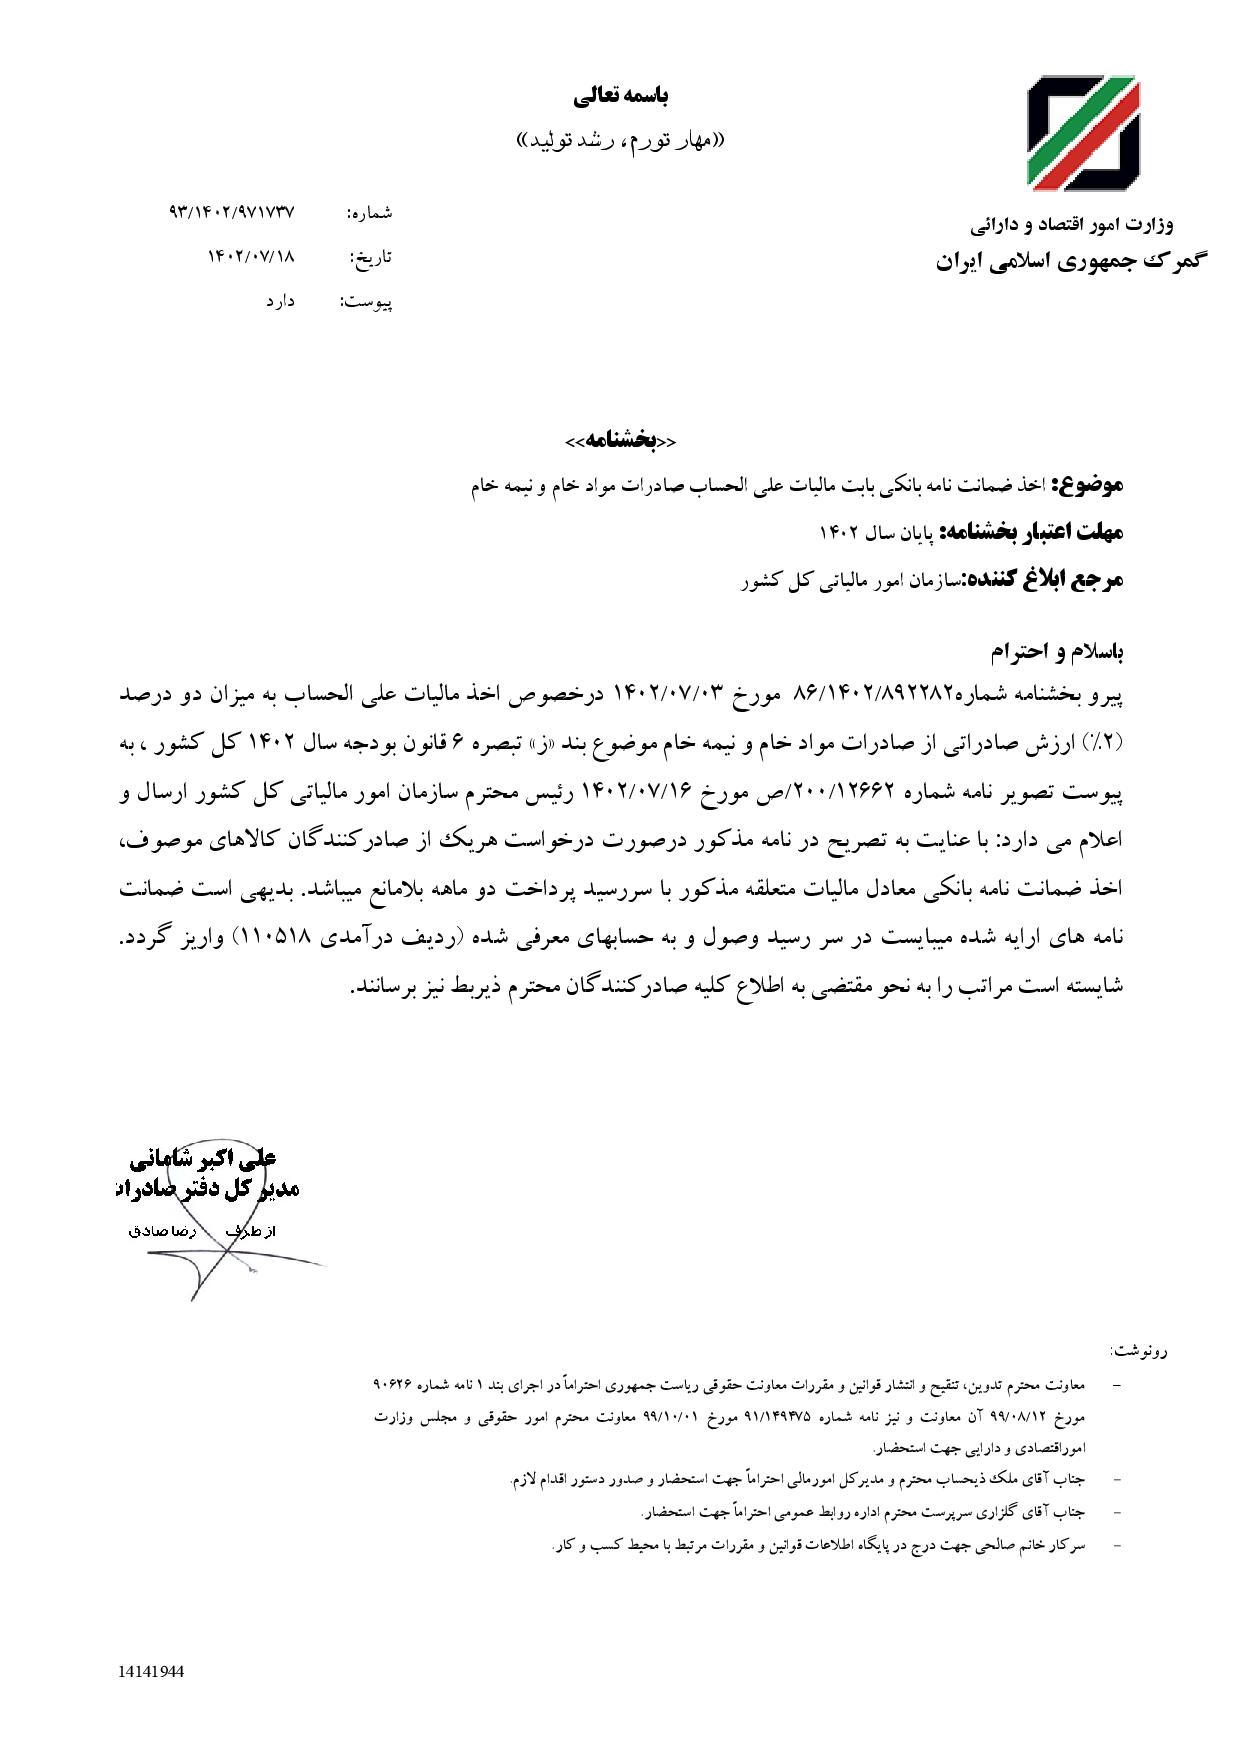 اخذ ضمانت نامه بانکی بابت مالیات علی الحساب صادرات مواد خام و نیمه خام